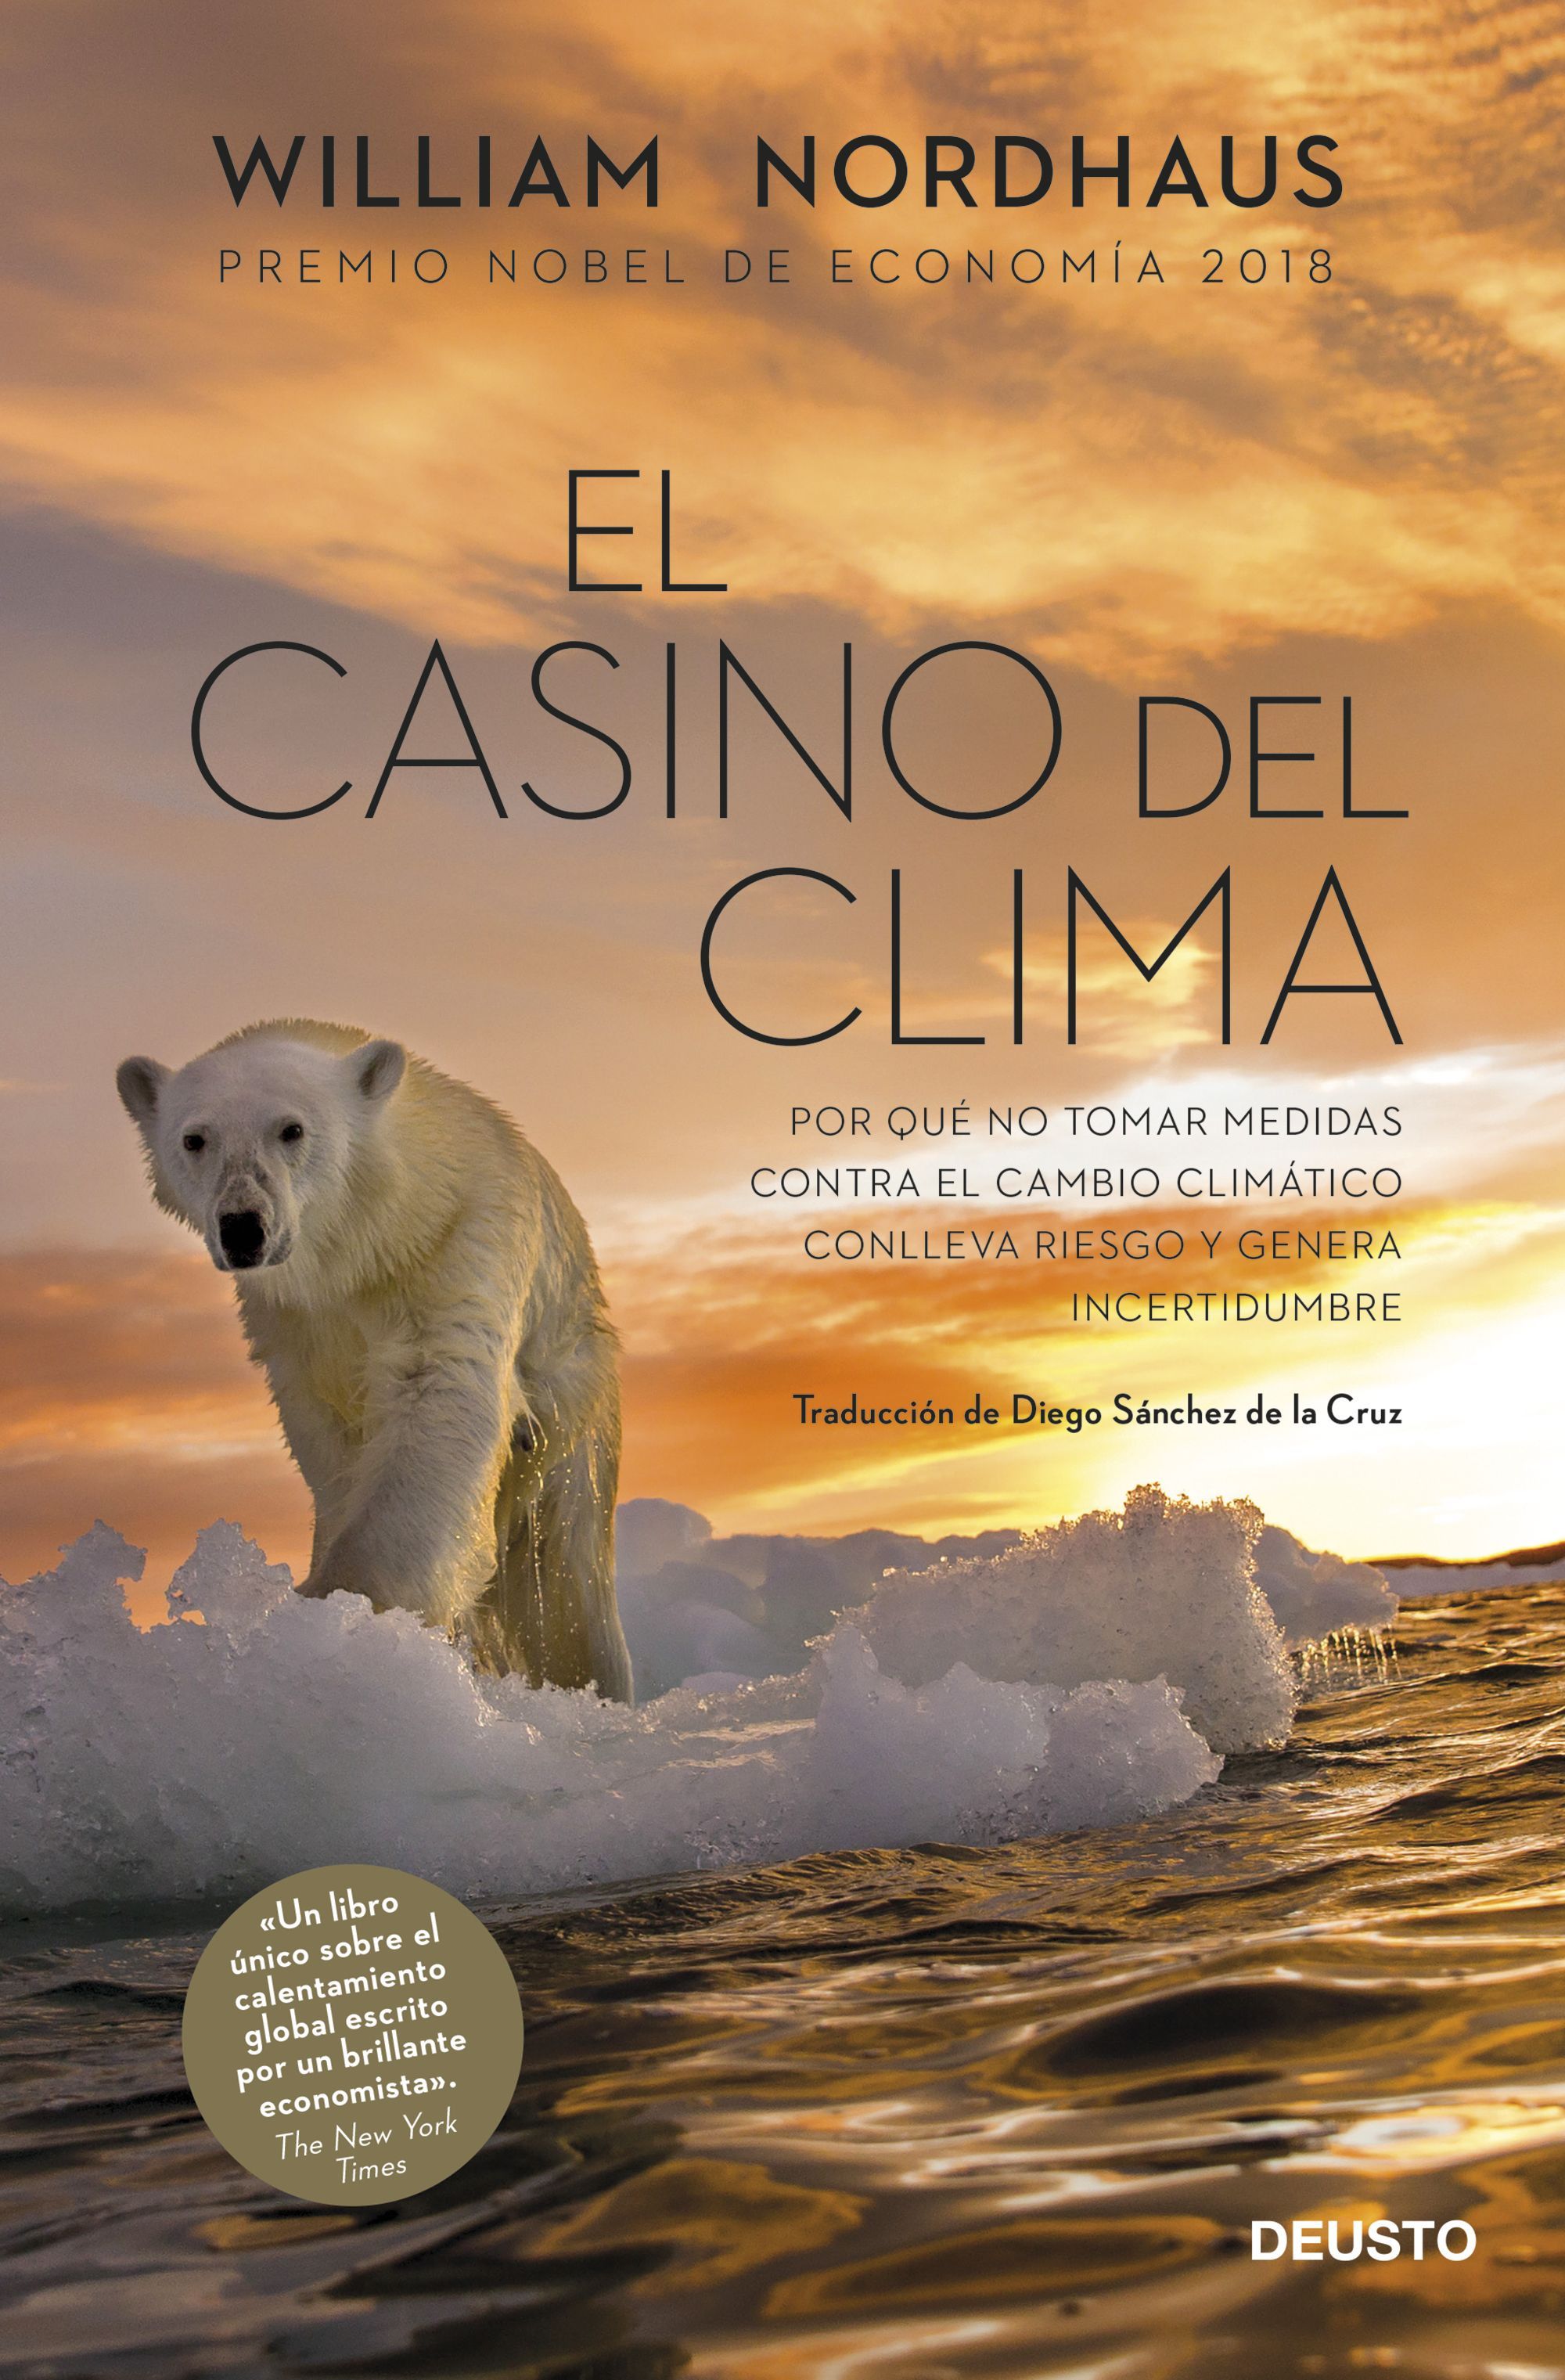 El premio Nobel de Economía Willam Nordhaus analiza el cambio climático en El casino del clima